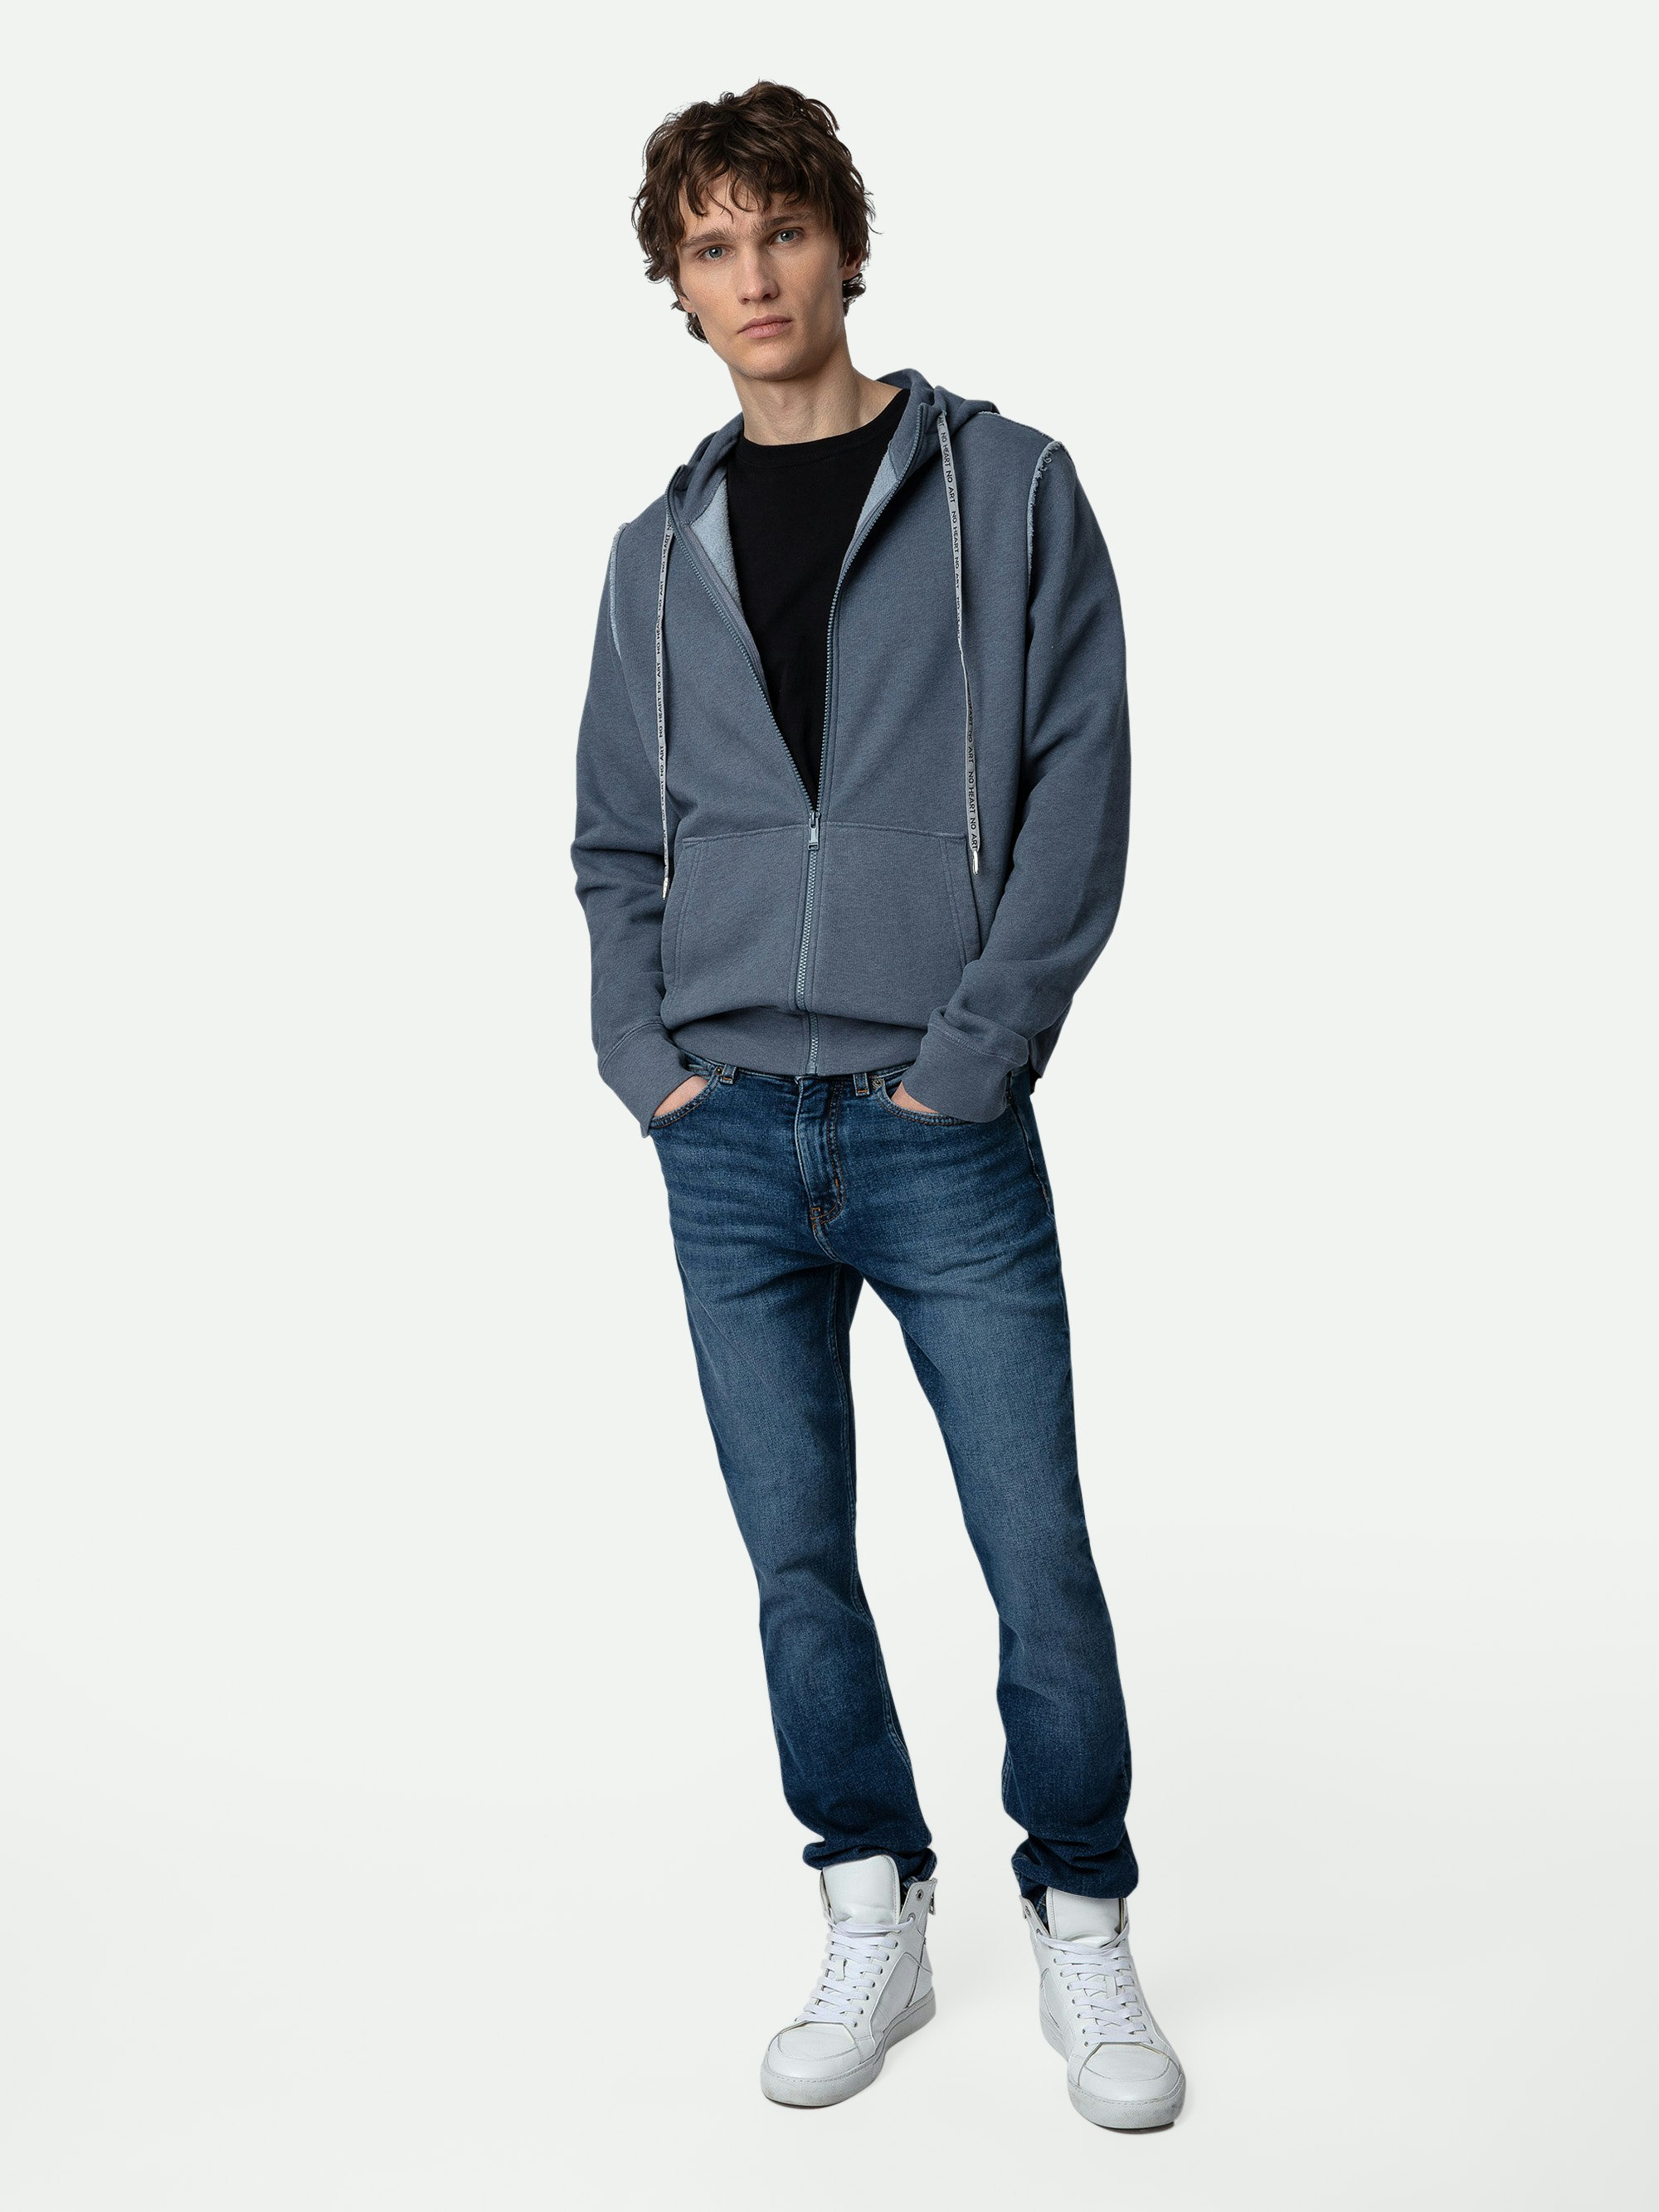 Sweatshirt Alex - Sweatshirt molletonné zippé en coton bleu à motifs, tags au dos homme et customisations créés par Humberto Cruz.